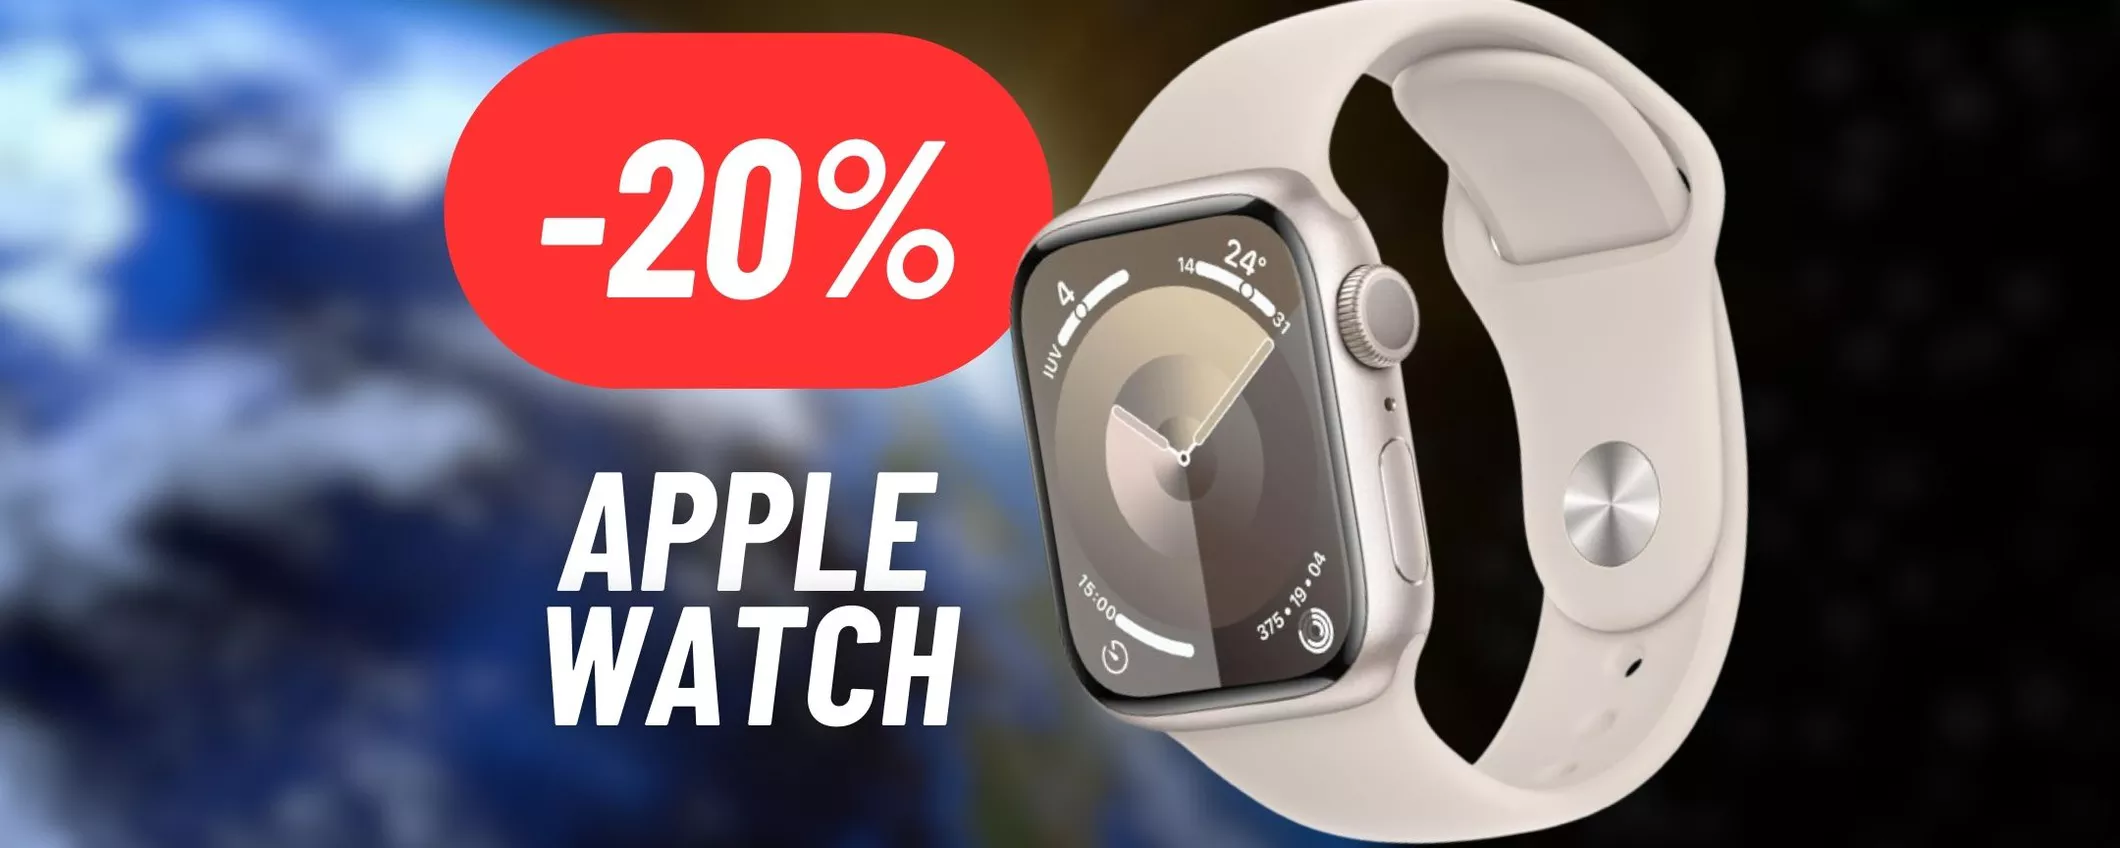 Apple Watch: elegante e funzionale al 20% di sconto